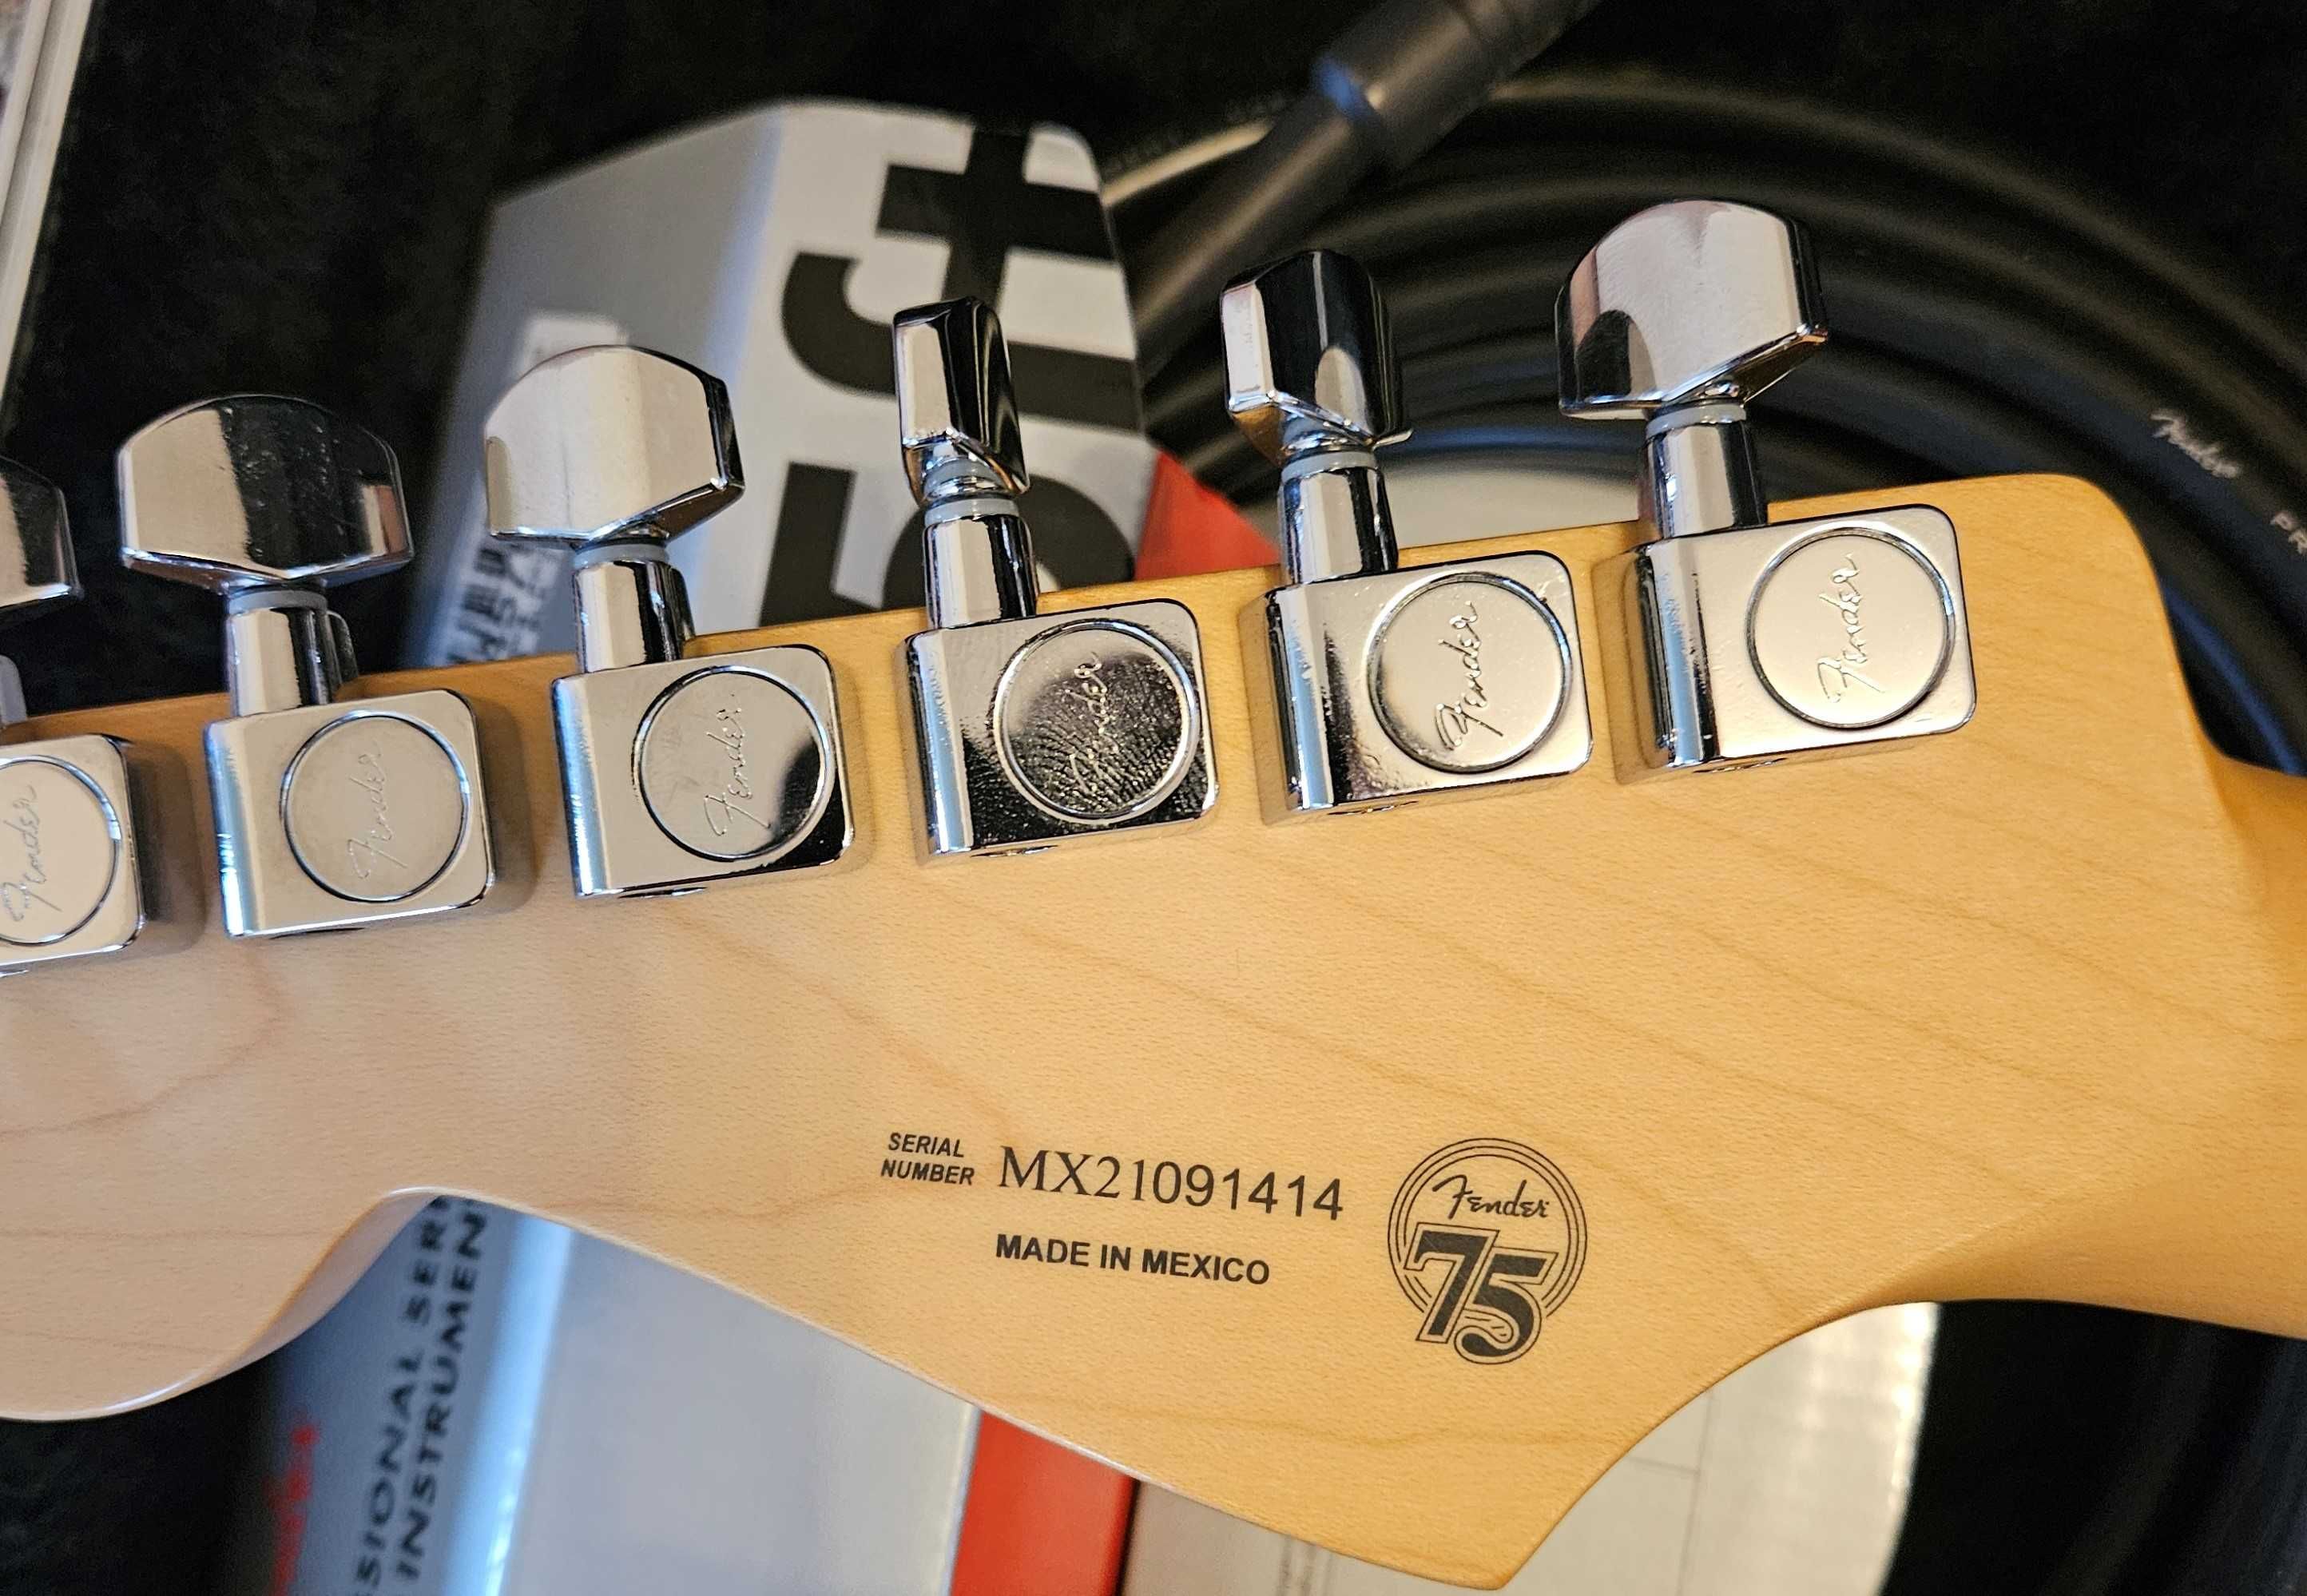 Chitara Fender Stratocaster 75th anniversary